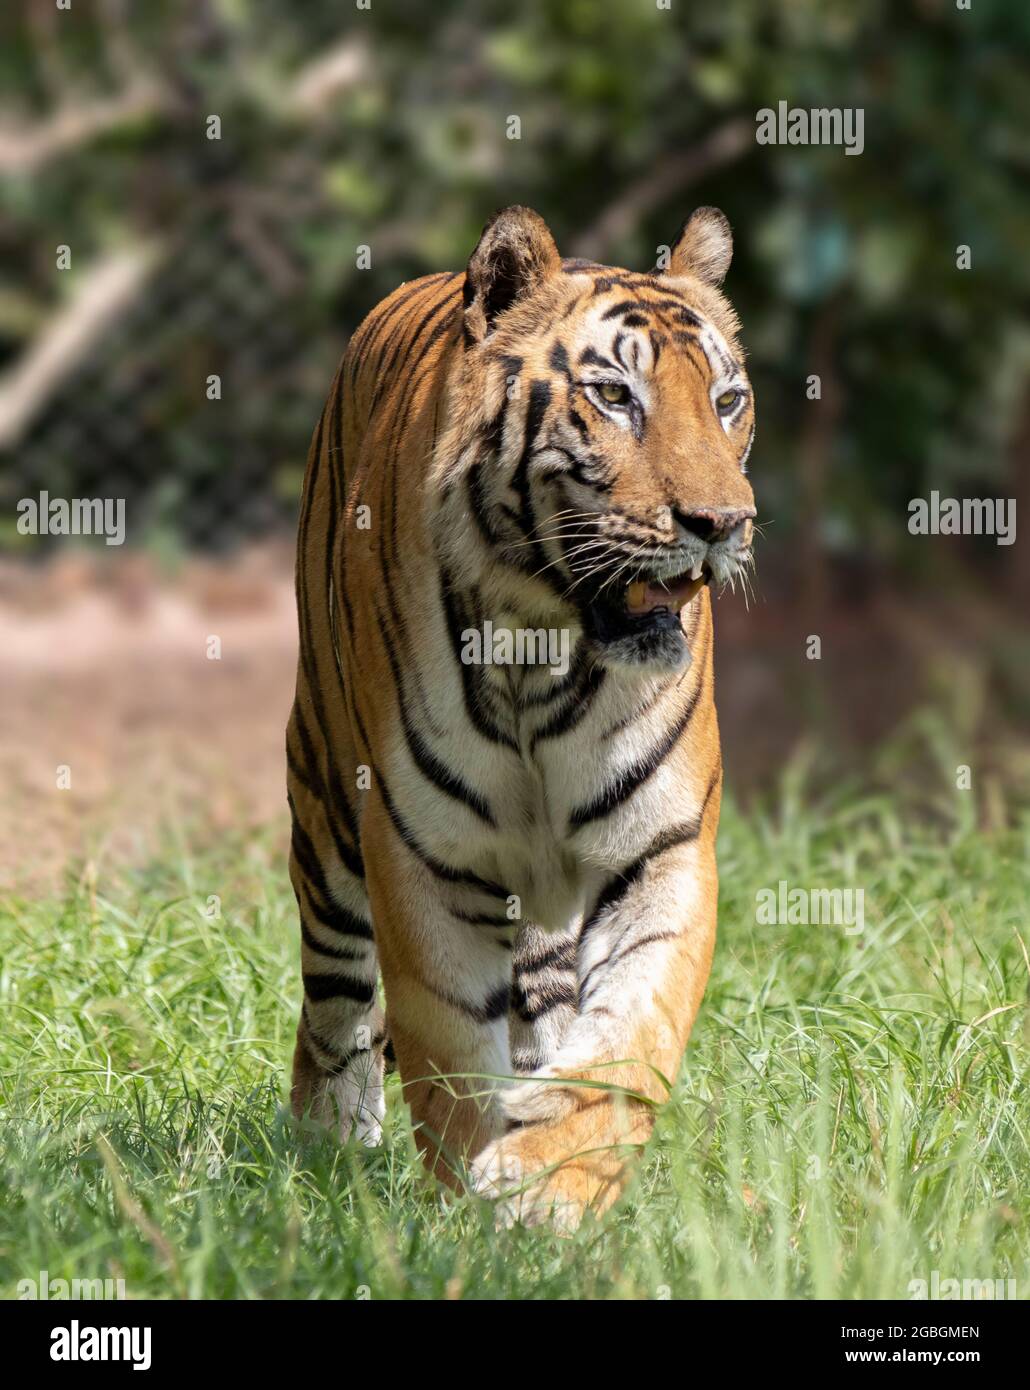 Grand tigre mâle dans l'habitat de la nature. Scène de la faune avec danger animal. Été chaud en Inde. Zone sèche avec le magnifique tigre indien, Panthera tigris. Banque D'Images